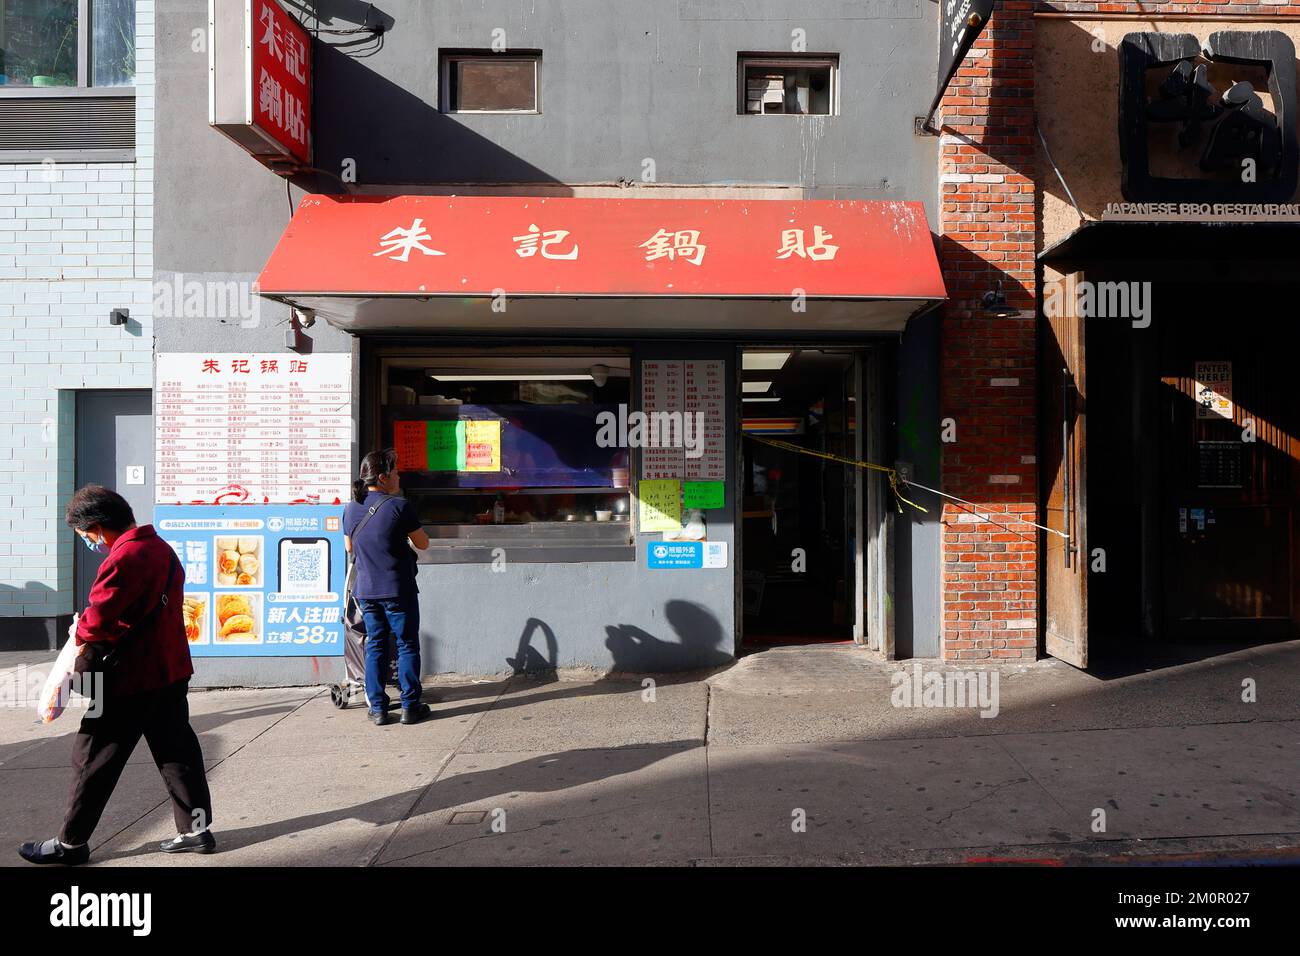 Zhu Ji Dumpling House 朱記鍋貼, 40-52 Main St, Queens, New York, NYC foto di un negozio di gnocchi fritti cinesi nel centro di Flushing. Foto Stock